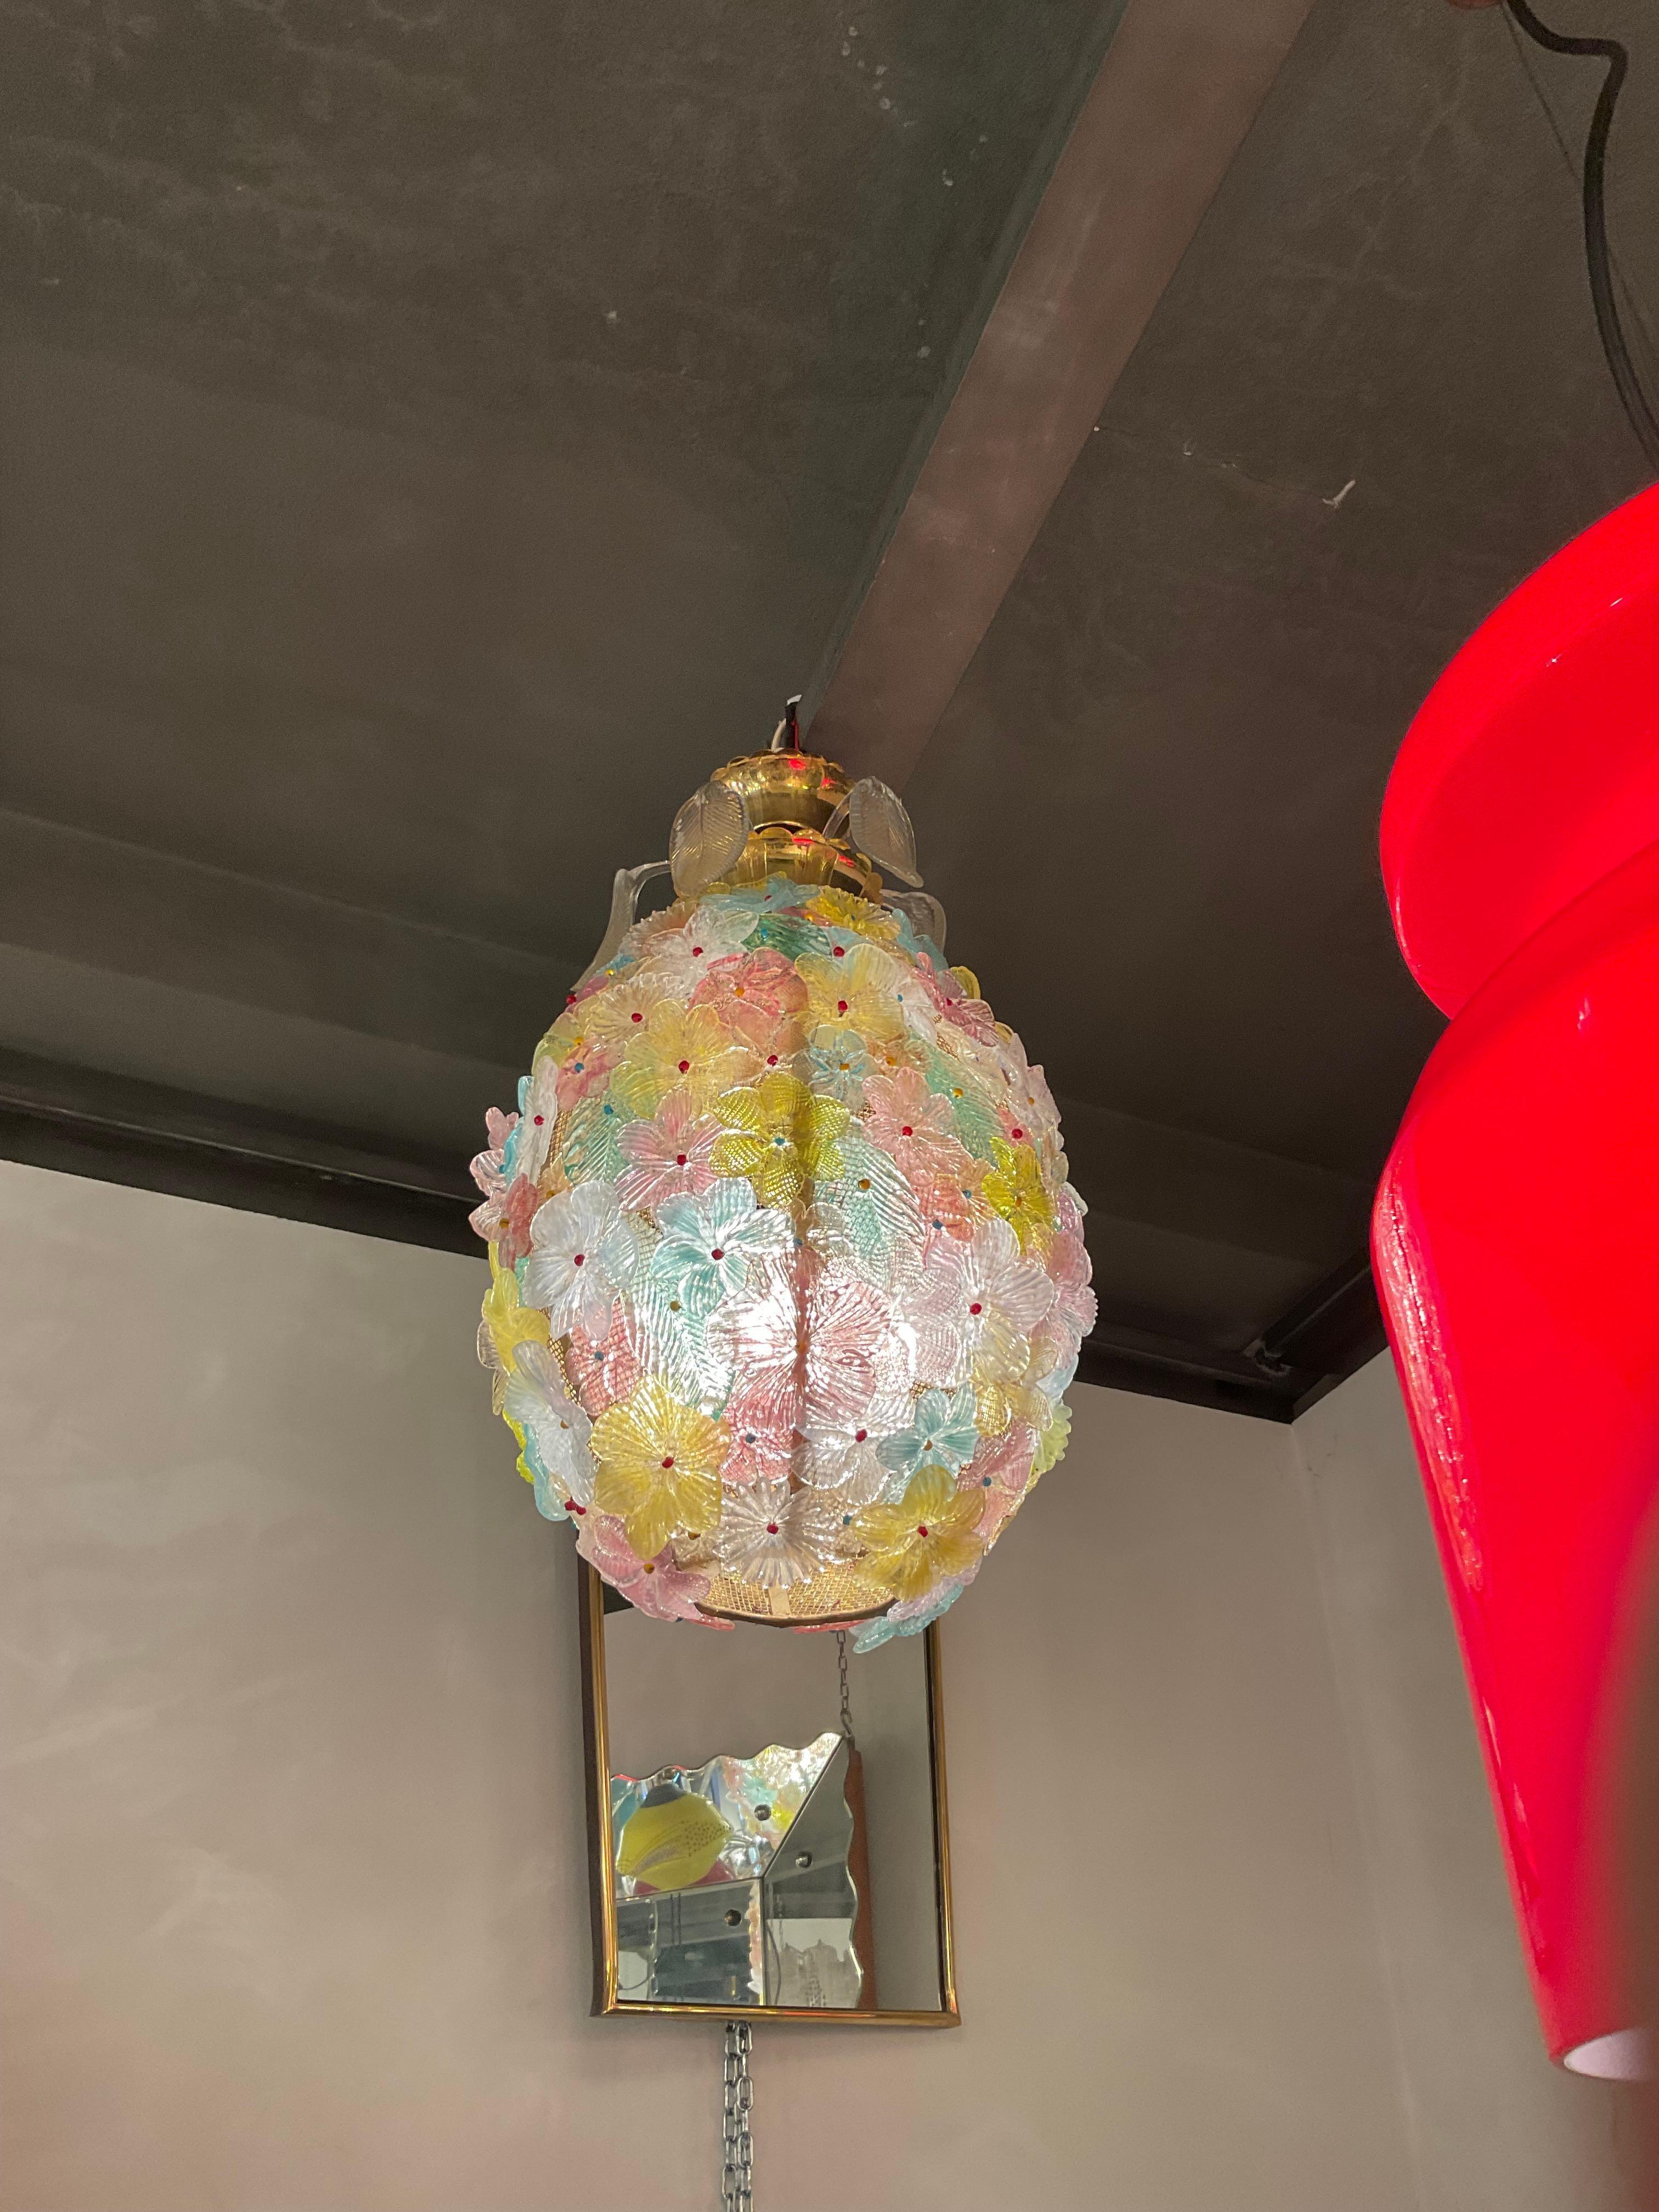 Un lampadaire en veau de Murano conçu dans les années 60 par la société SEGUSO, à MURANO.
Particulièrement intéressante pour sa forme aux ADS avec 5 gouttes d'eau incrustées dans la couverture d'ottone, également en vetro de Murano avec le motif